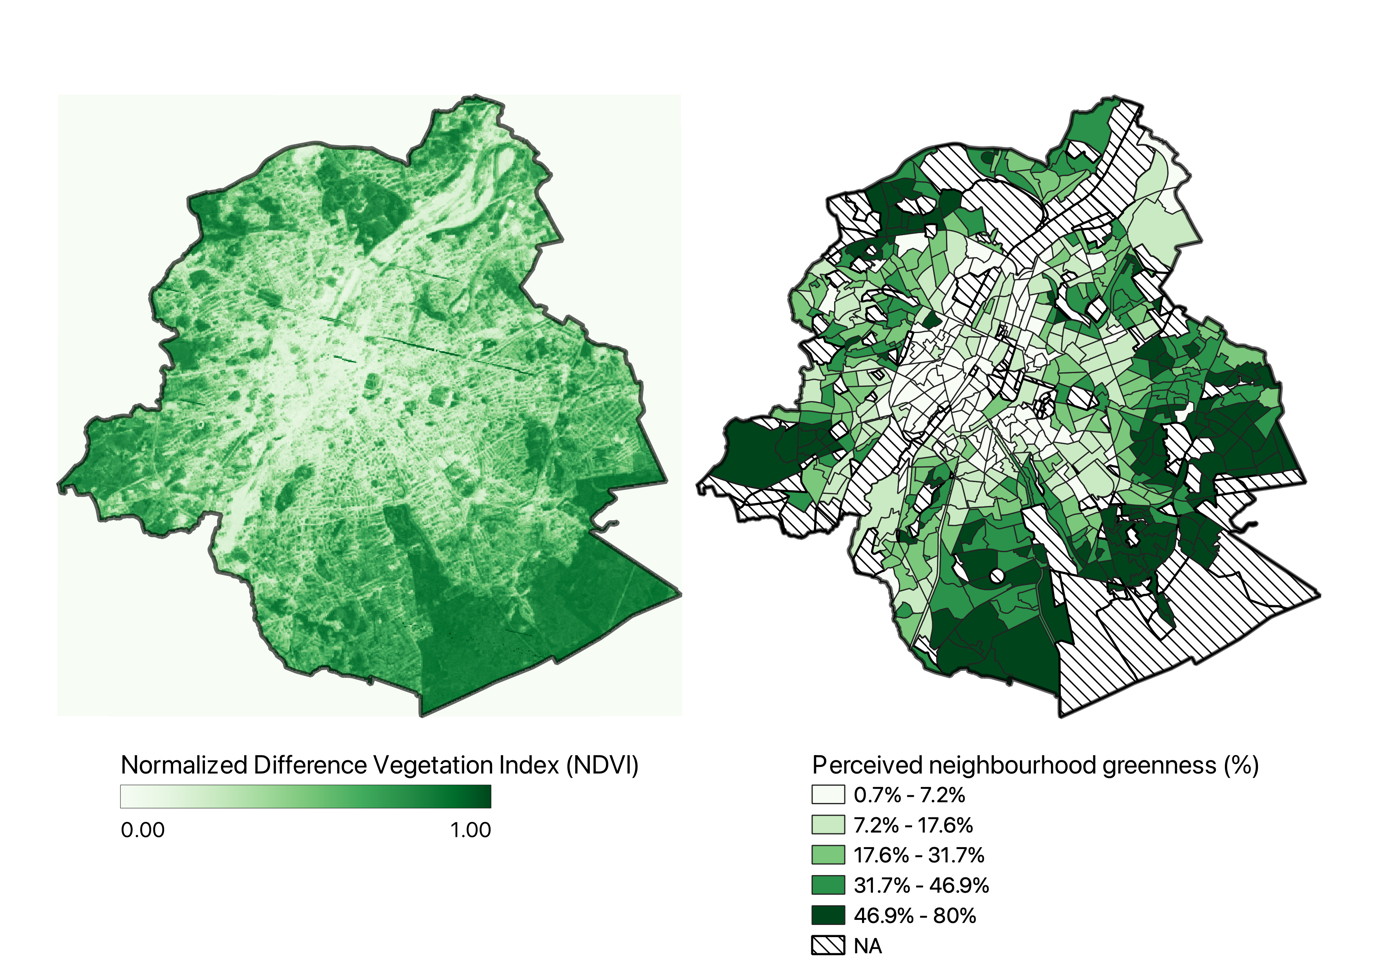 Le risque de mortalité dû à la pollution atmosphérique est le plus élevé dans les quartiers défavorisés de Bruxelles